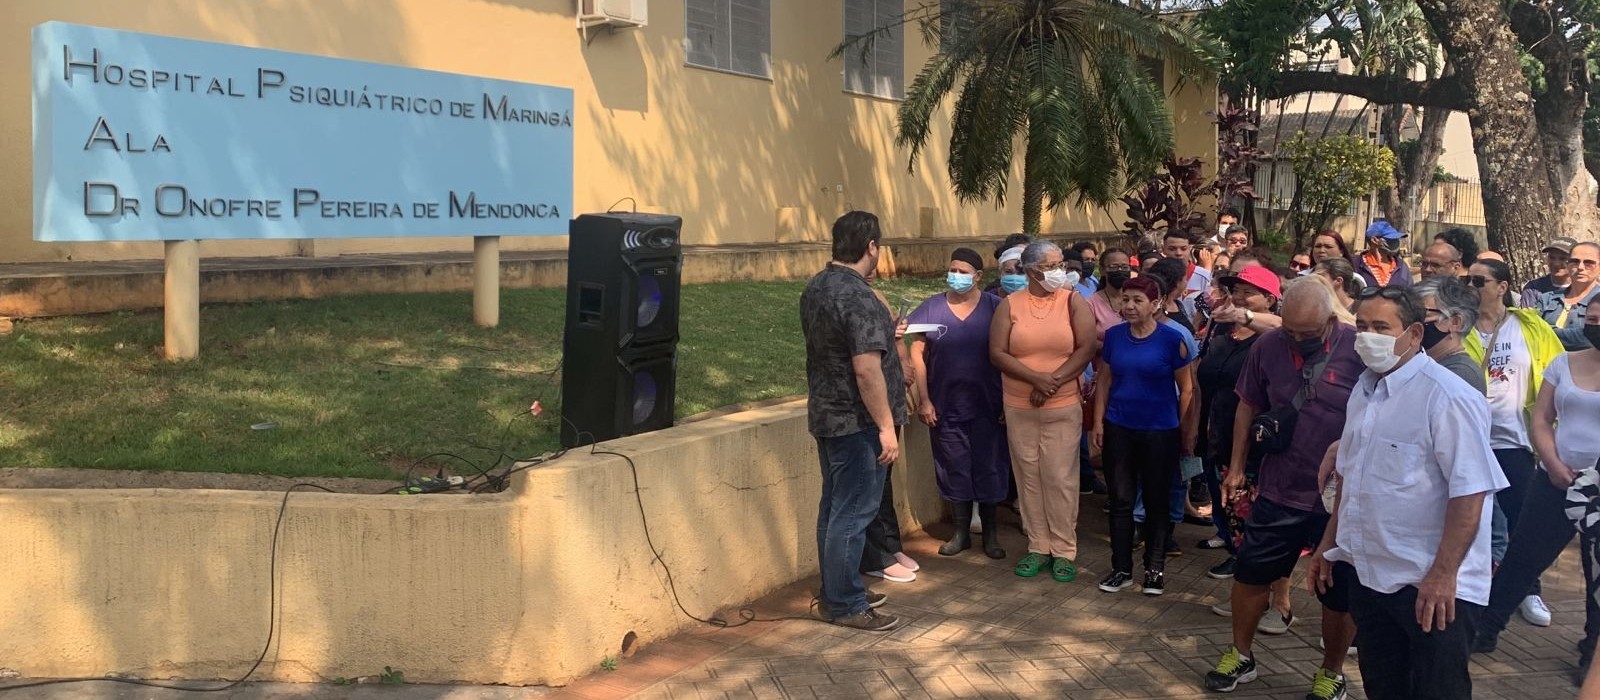 Ato simbólico de apoio é realizado em frente ao Hospital Psiquiátrico de Maringá